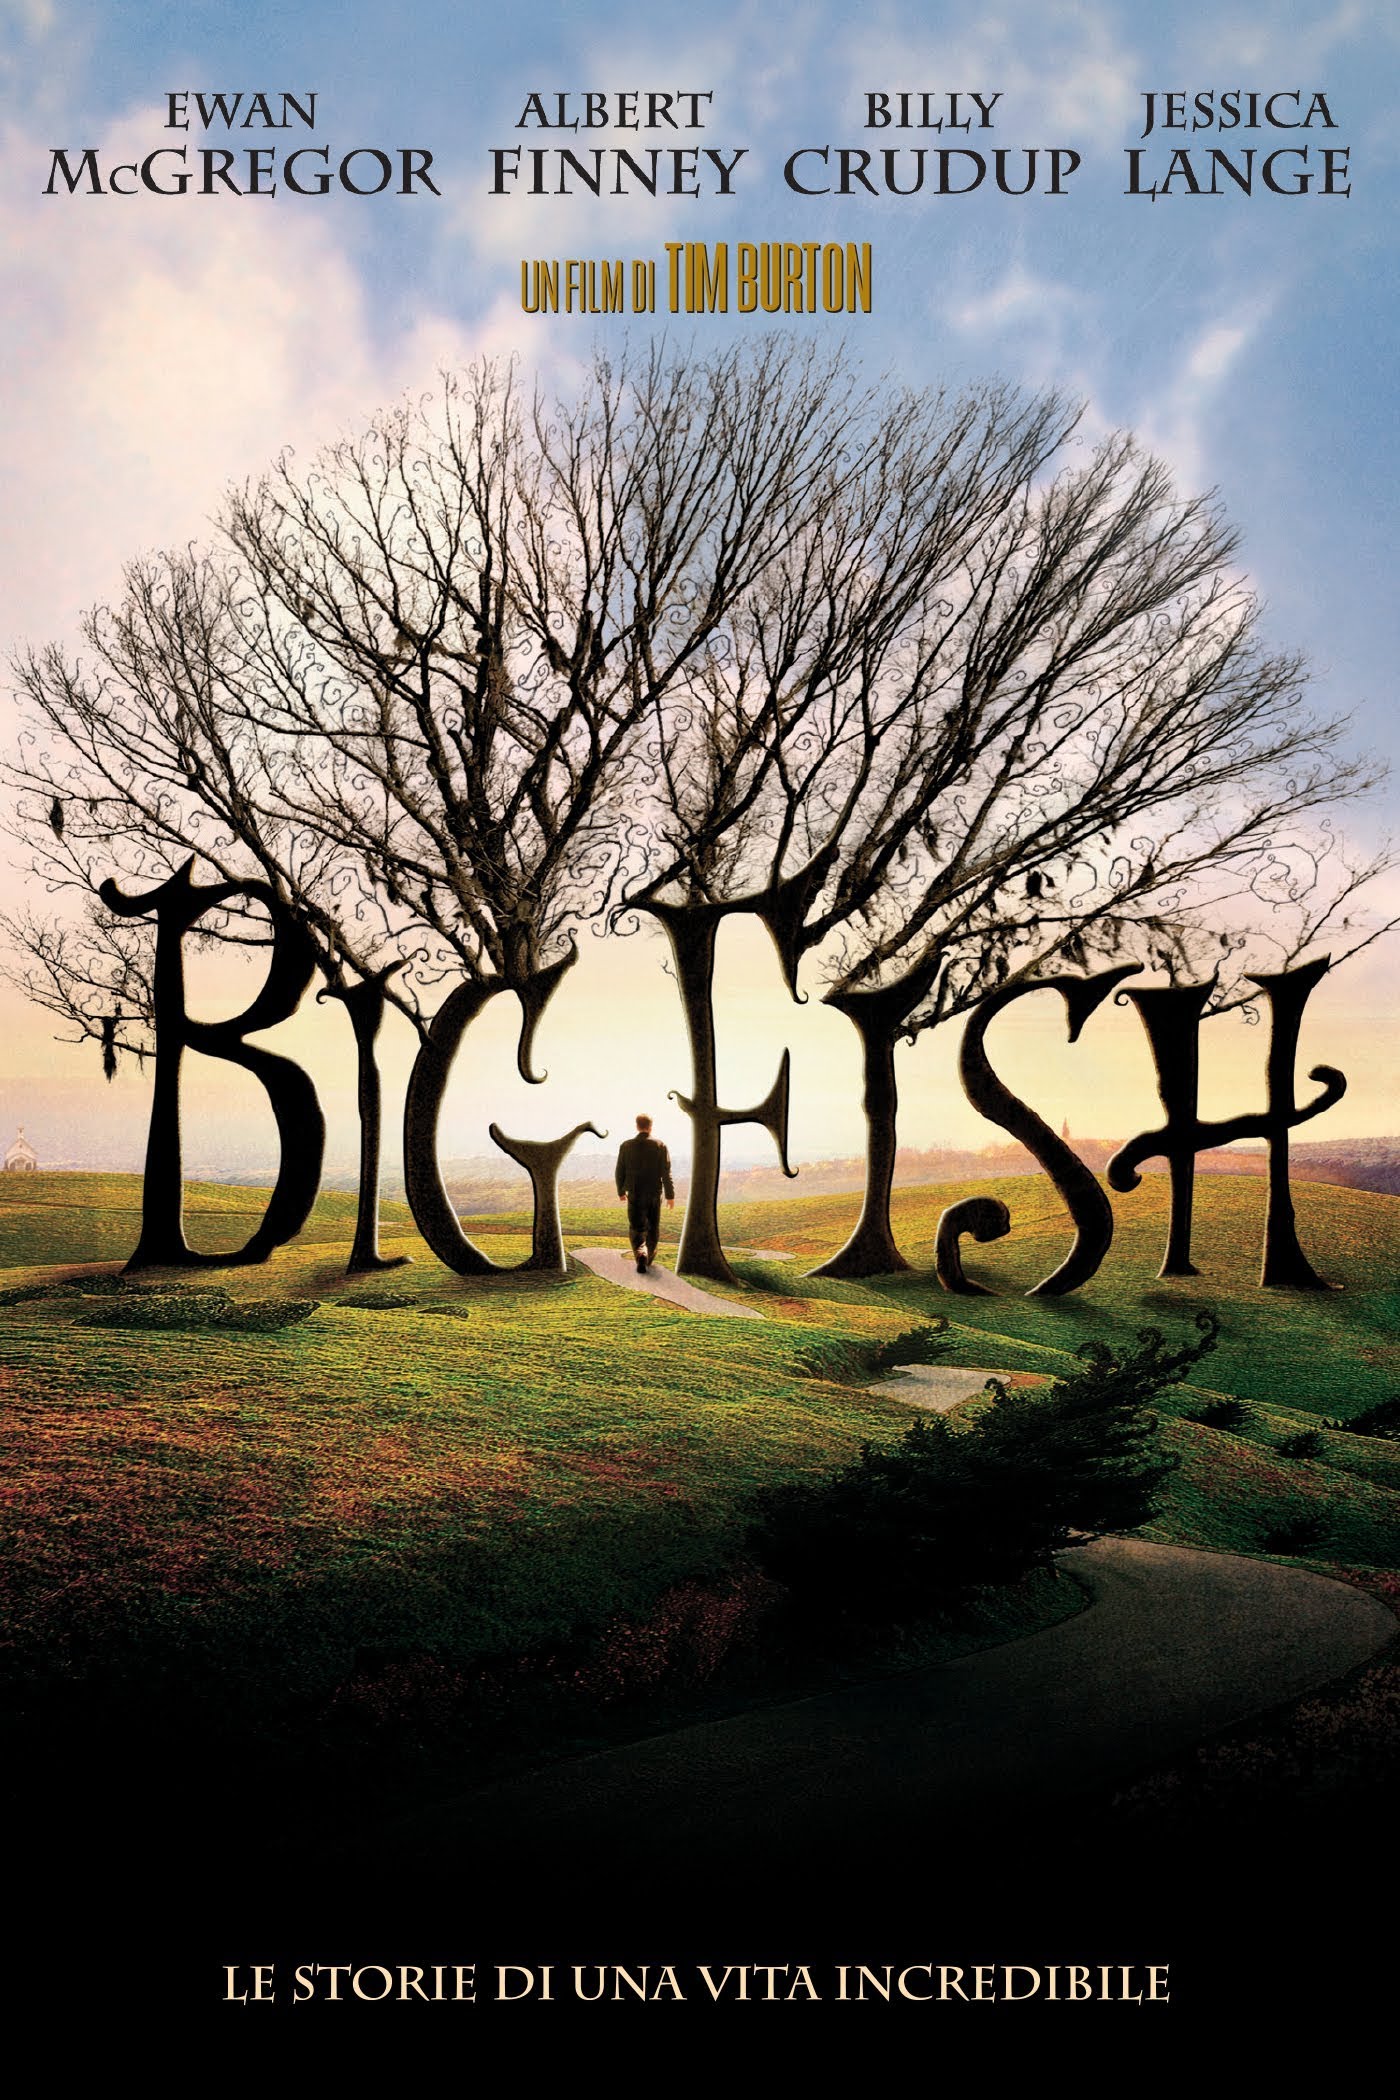 Big Fish – Le storie di una vita incredibile [HD] (2003)